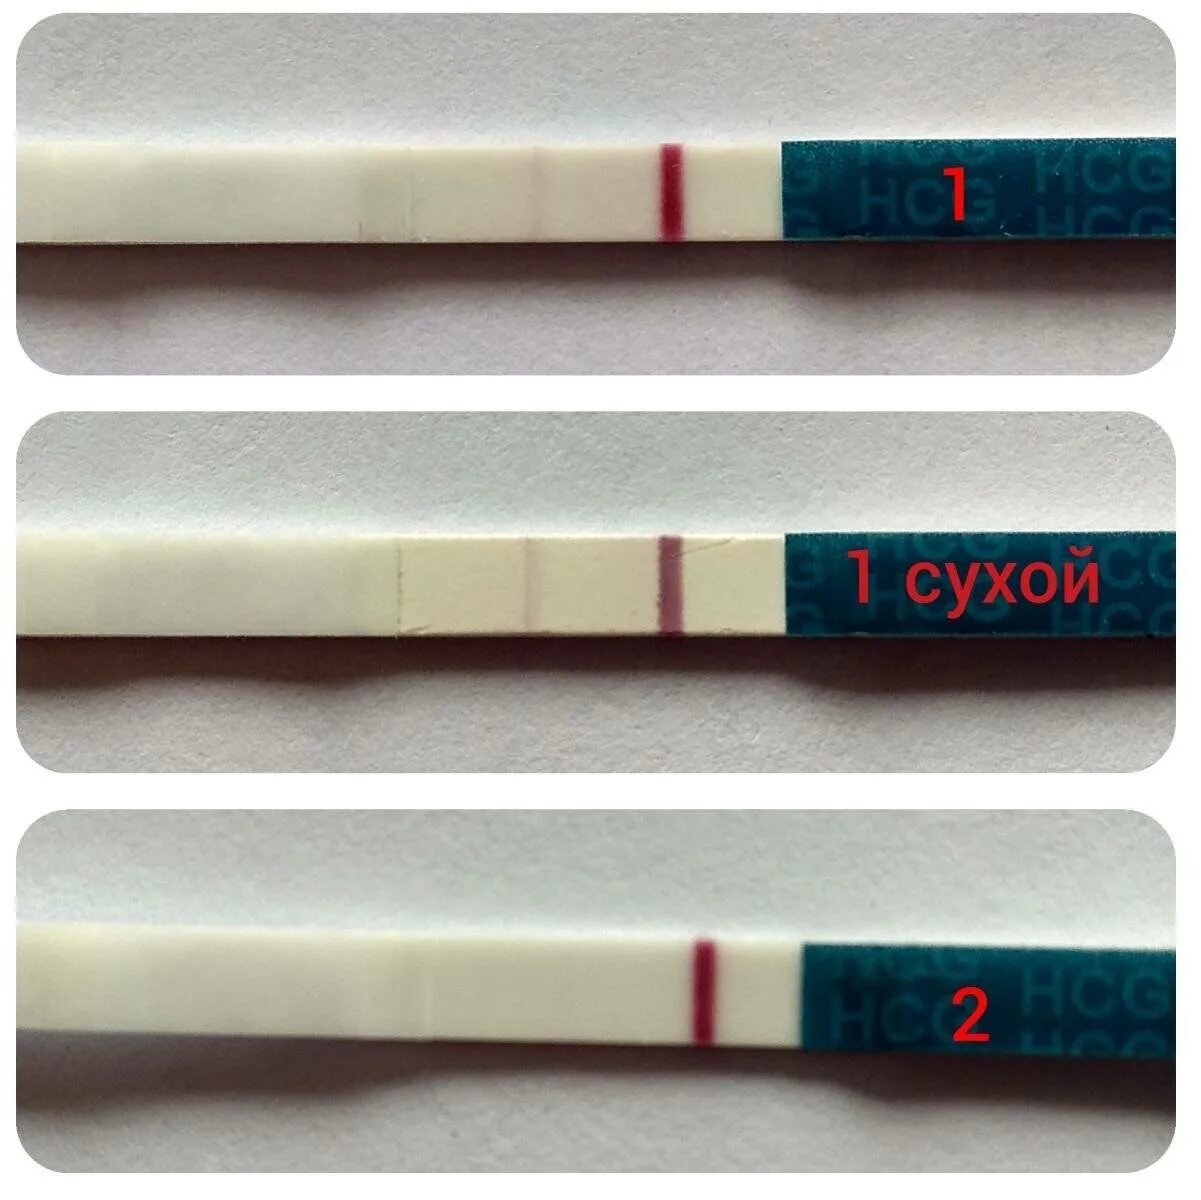 Тест на беременность показал бледную полоску. Реагент тест на беременность. Тест фраутест с 2 тест полосками. Тест на беременность одна полоска вторая реагент. Тест на беременность HCG 2 полоски.